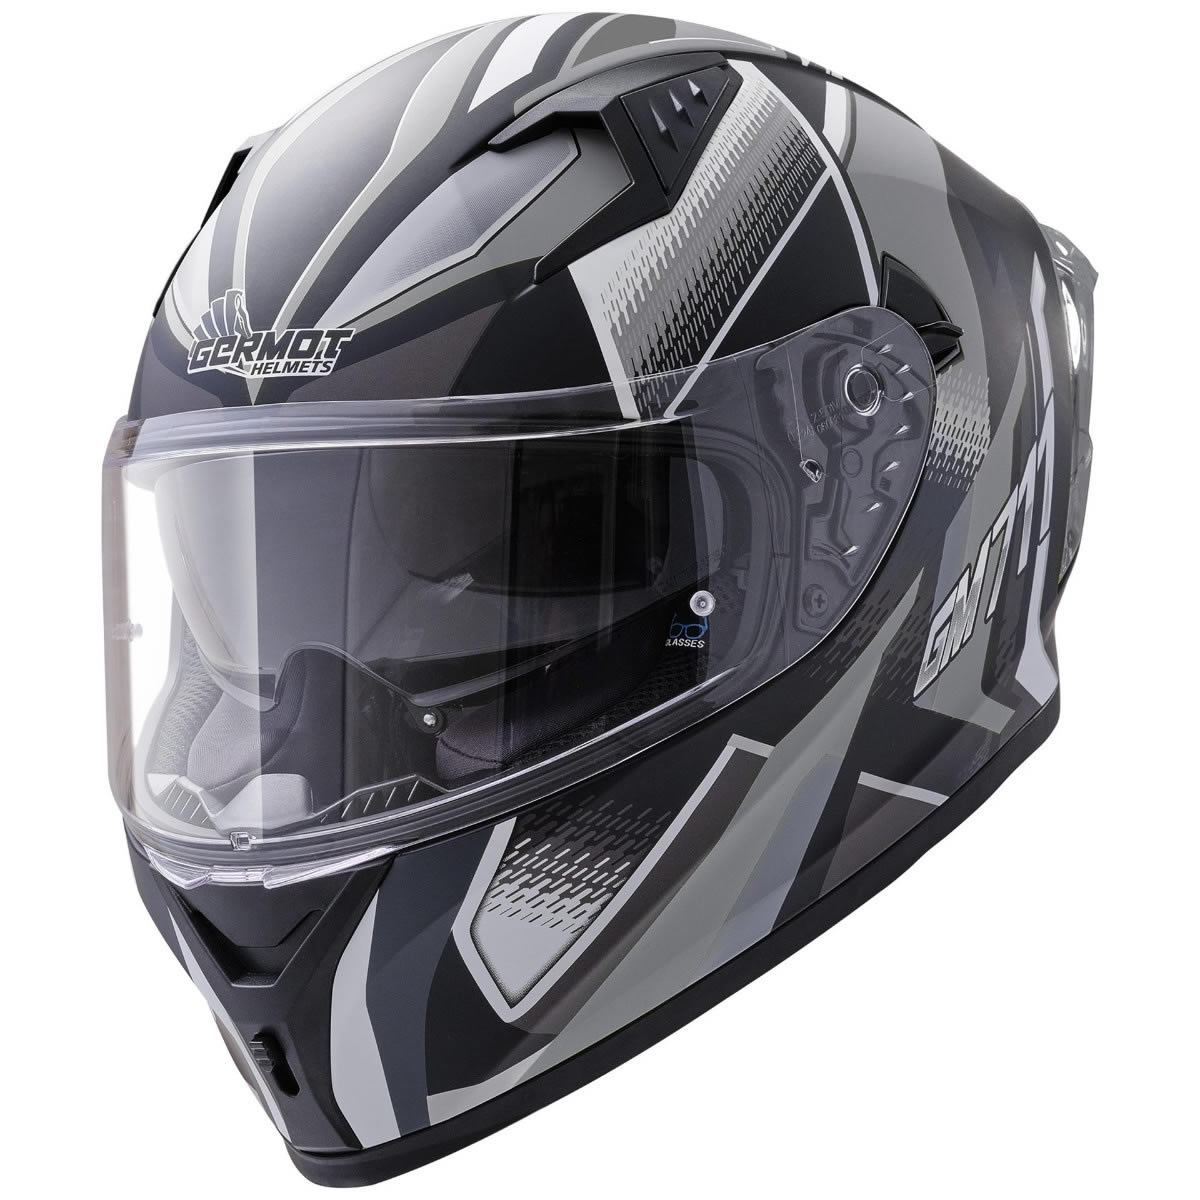 Germot GM 711 Helm, schwarz-grau matt